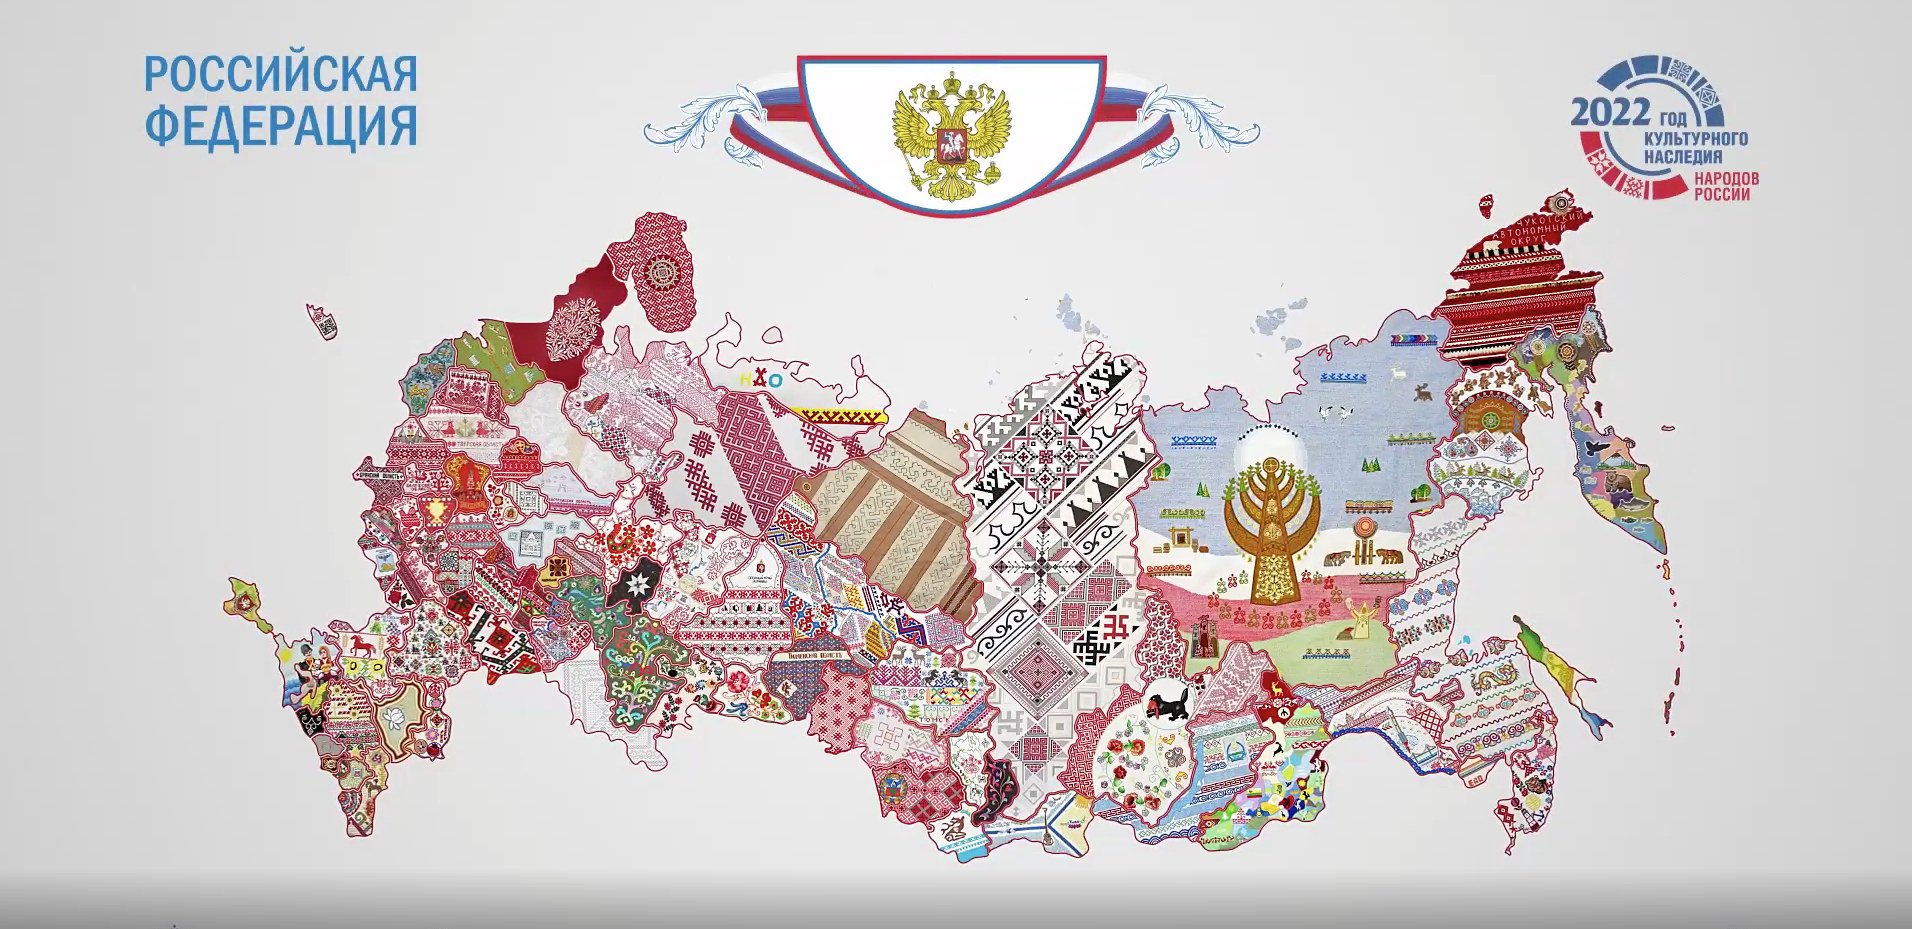 Вышитая карта России проект Всероссийский. Карта РФ 2022. Вышитая карта России 2022 года. Вышитая карта России Чувашия.